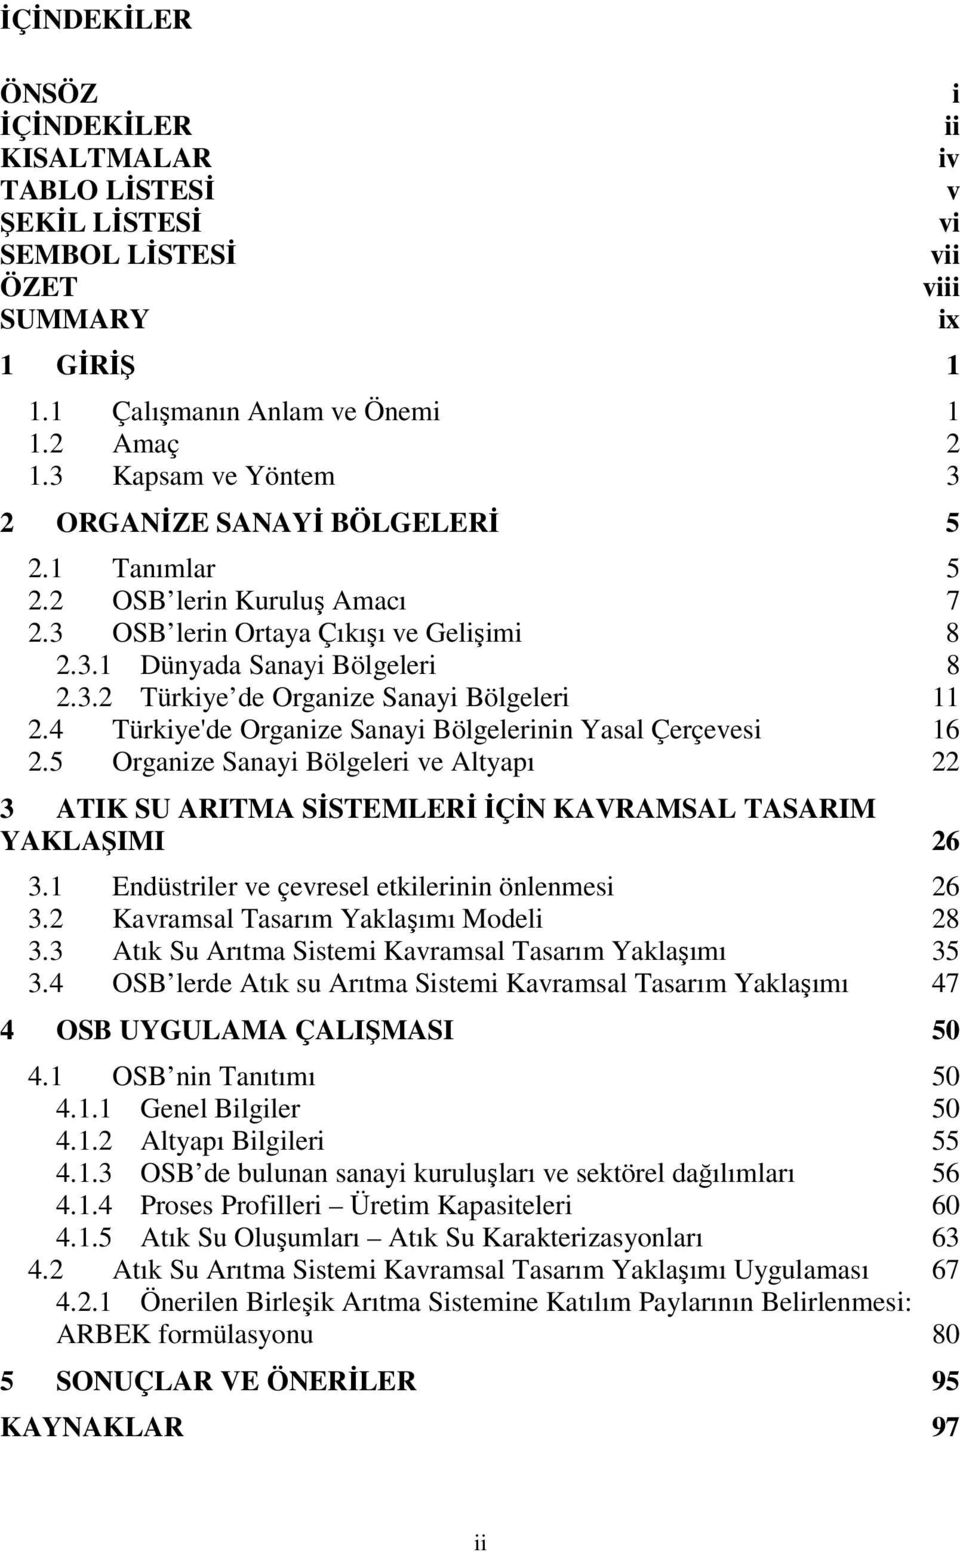 4 Türkiye'de Organize Sanayi Bölgelerinin Yasal Çerçevesi 16 2.5 Organize Sanayi Bölgeleri ve Altyapı 22 3 ATIK SU ARITMA SİSTEMLERİ İÇİN KAVRAMSAL TASARIM YAKLAŞIMI 26 3.